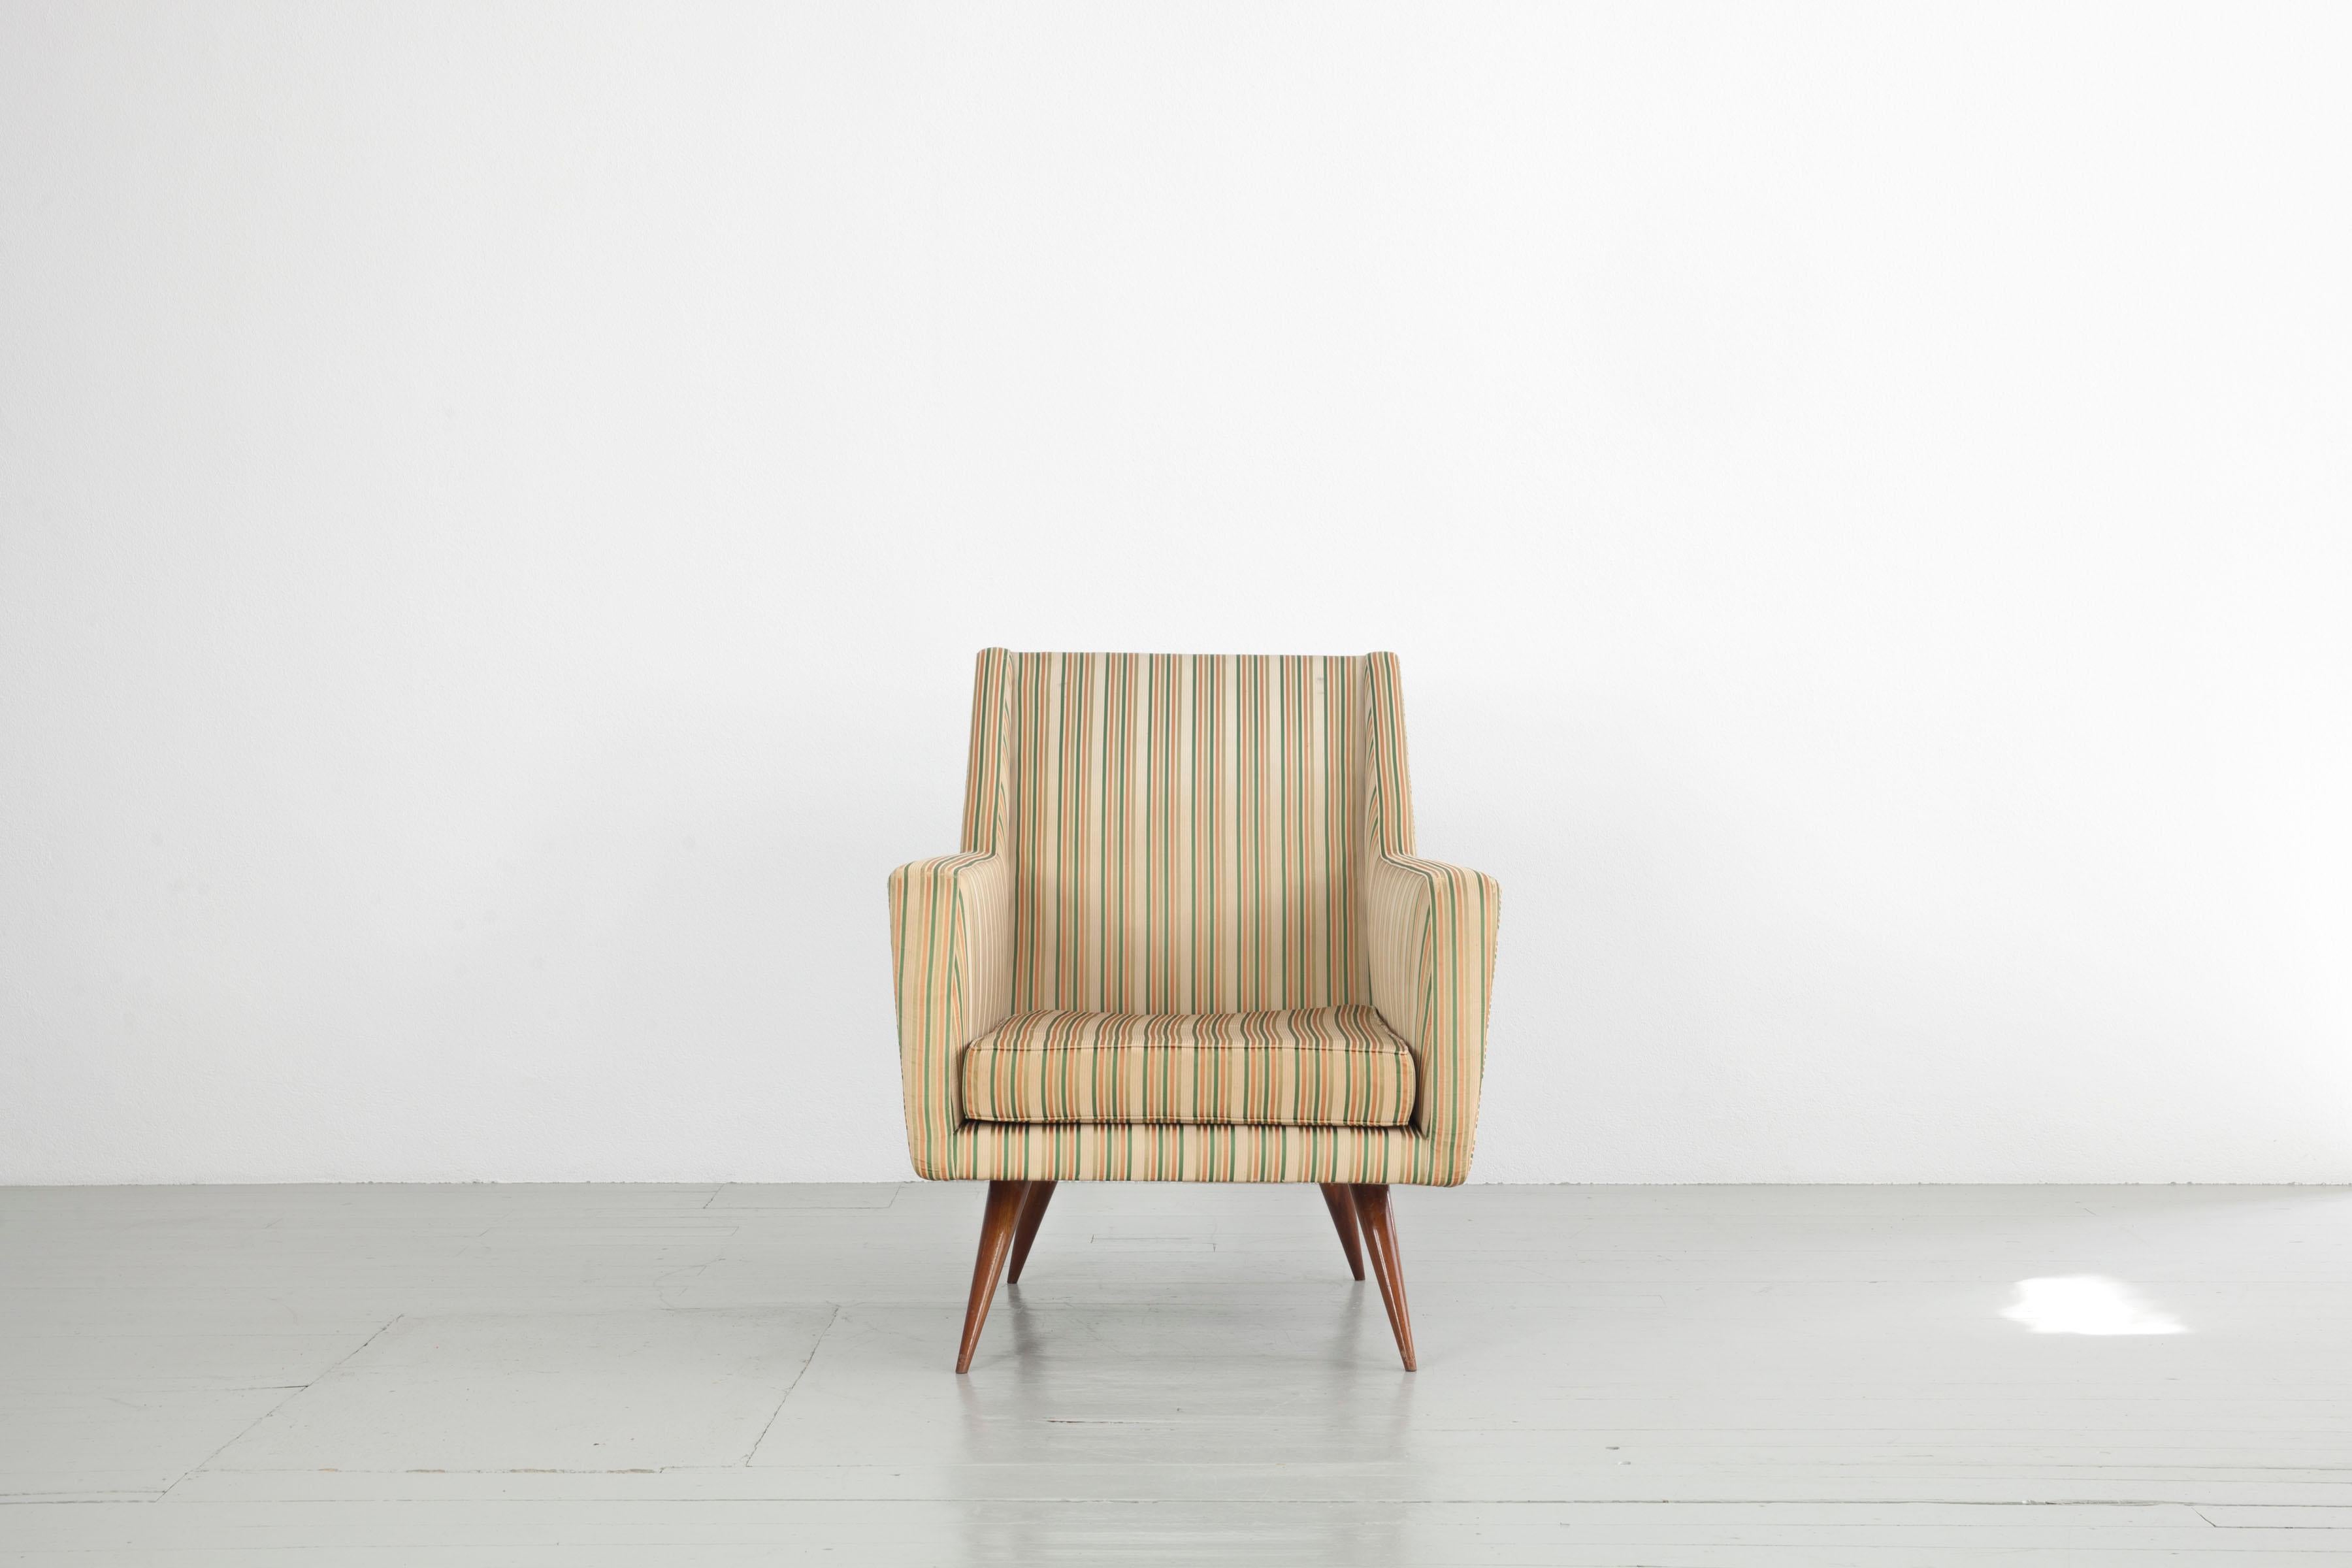 Dieser Satz von drei Sesseln wurde in den 1950er Jahren hergestellt. Der Entwurf wird Melchiorre Bega zugeschrieben. Die zweifarbigen Sessel bestehen aus konisch zulaufenden Holzbeinen, auf denen der schwere Sesselkörper mit geraden Linien ruht. Der